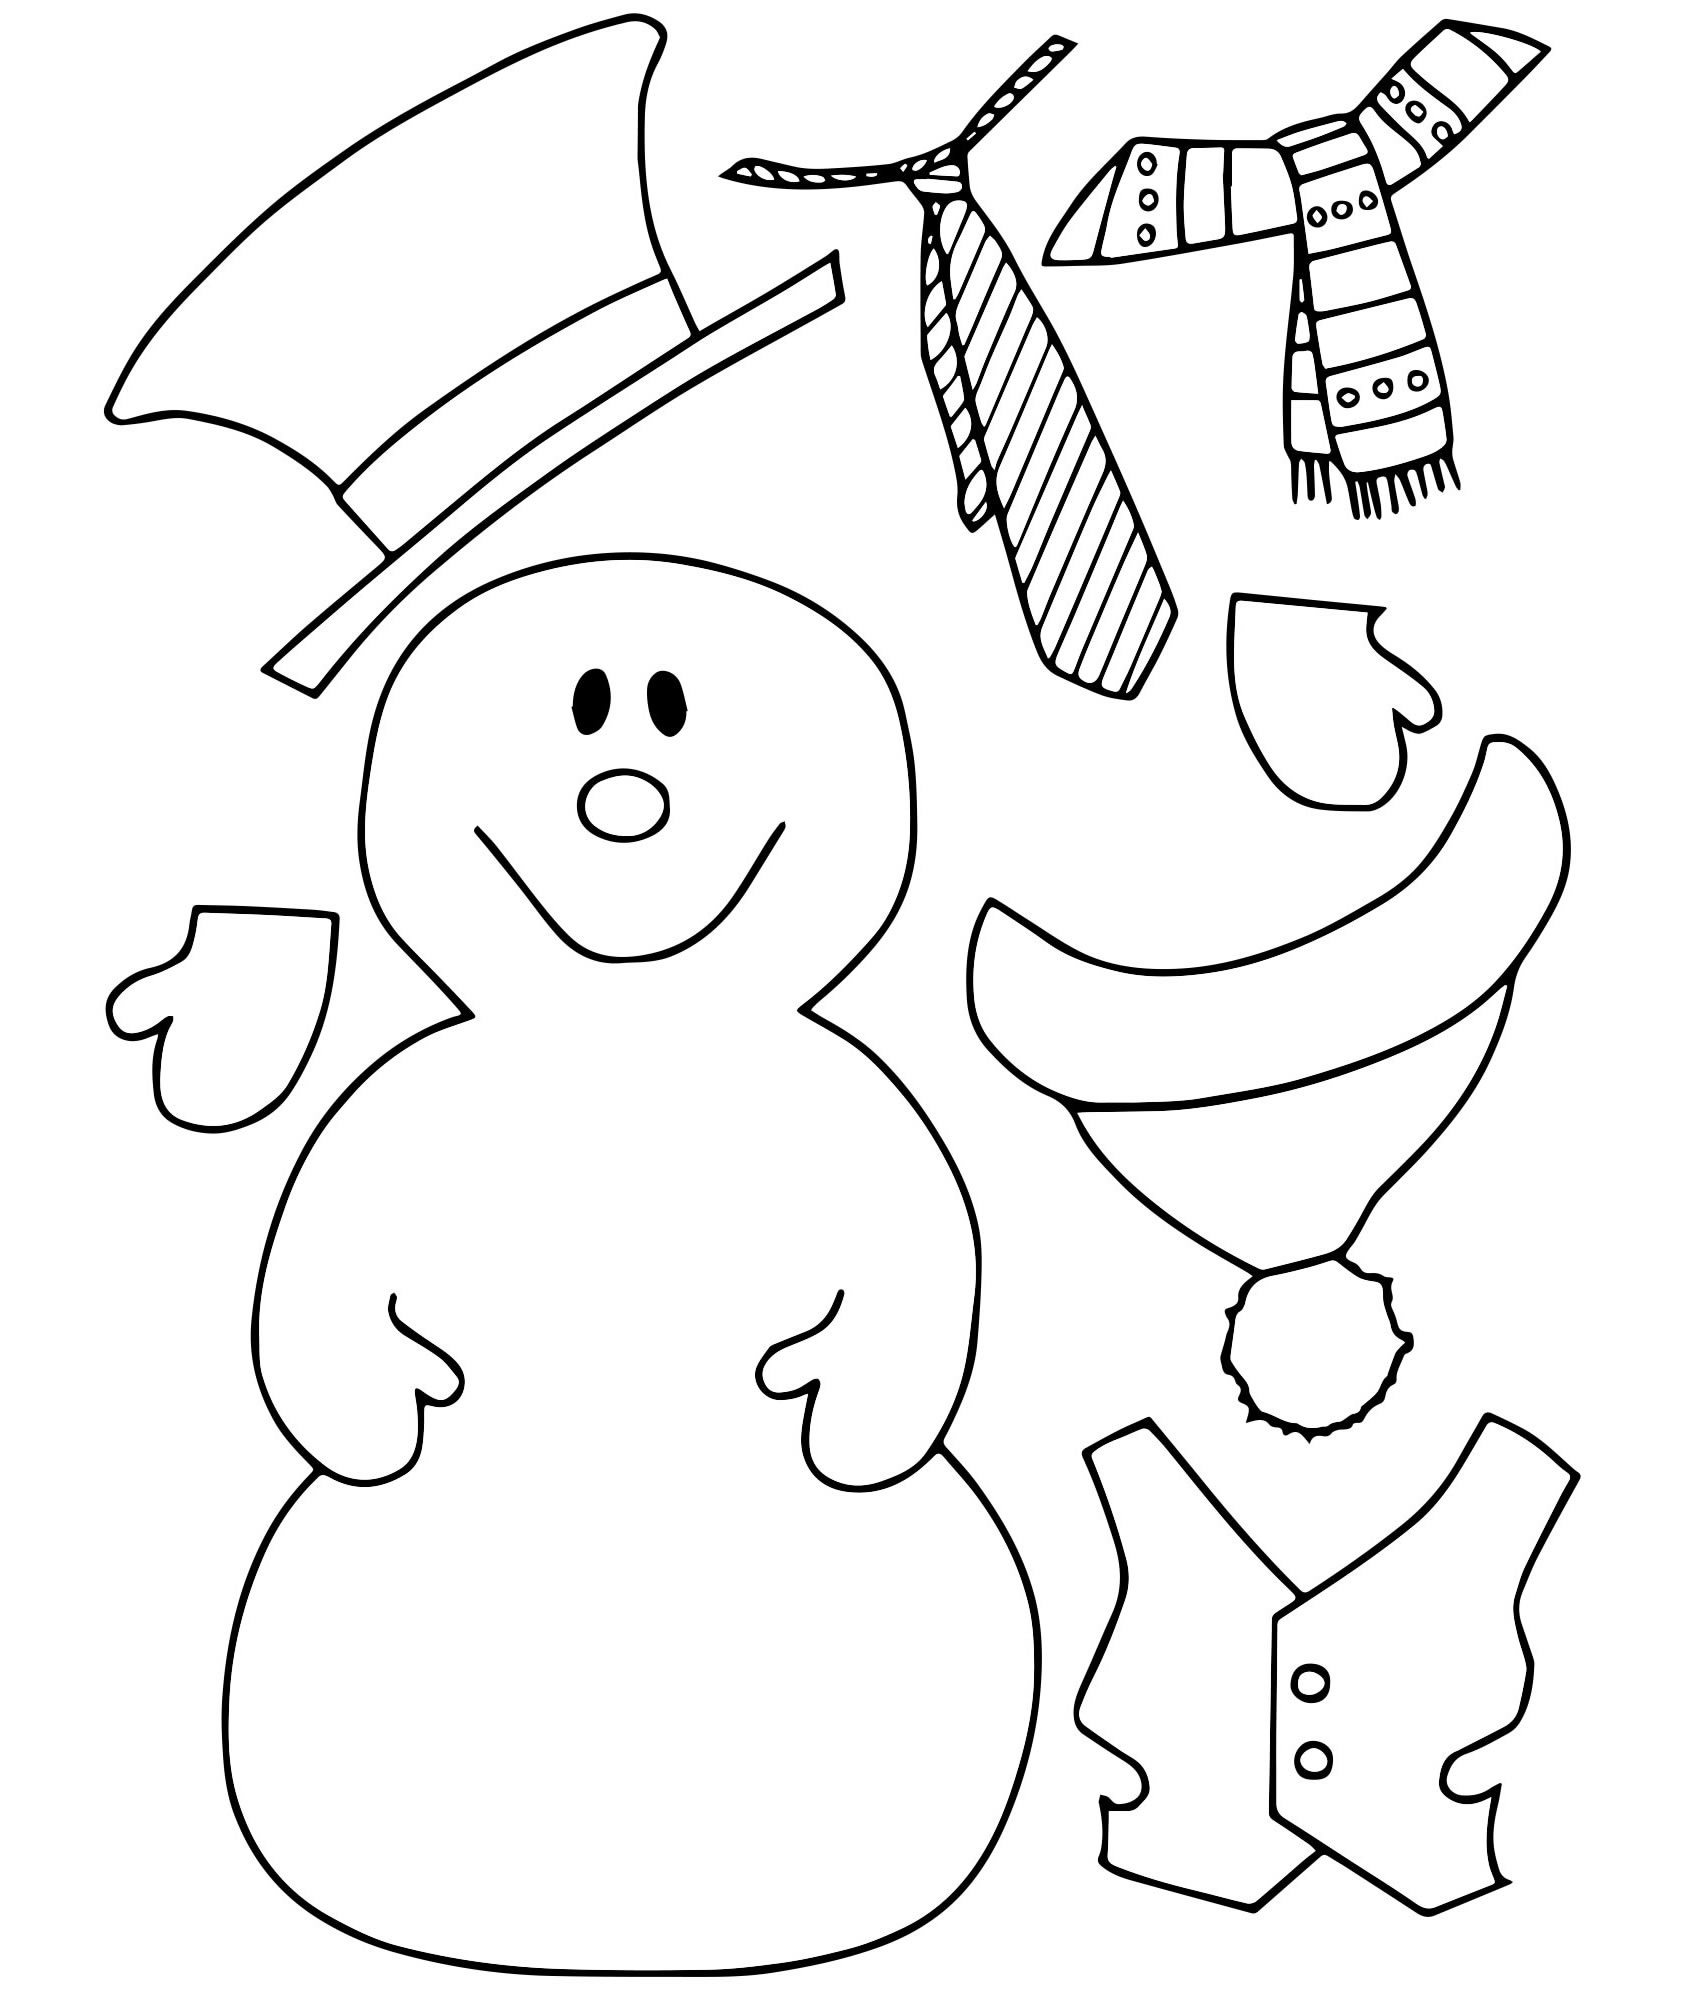 Аппликация снеговик раскраска для детей